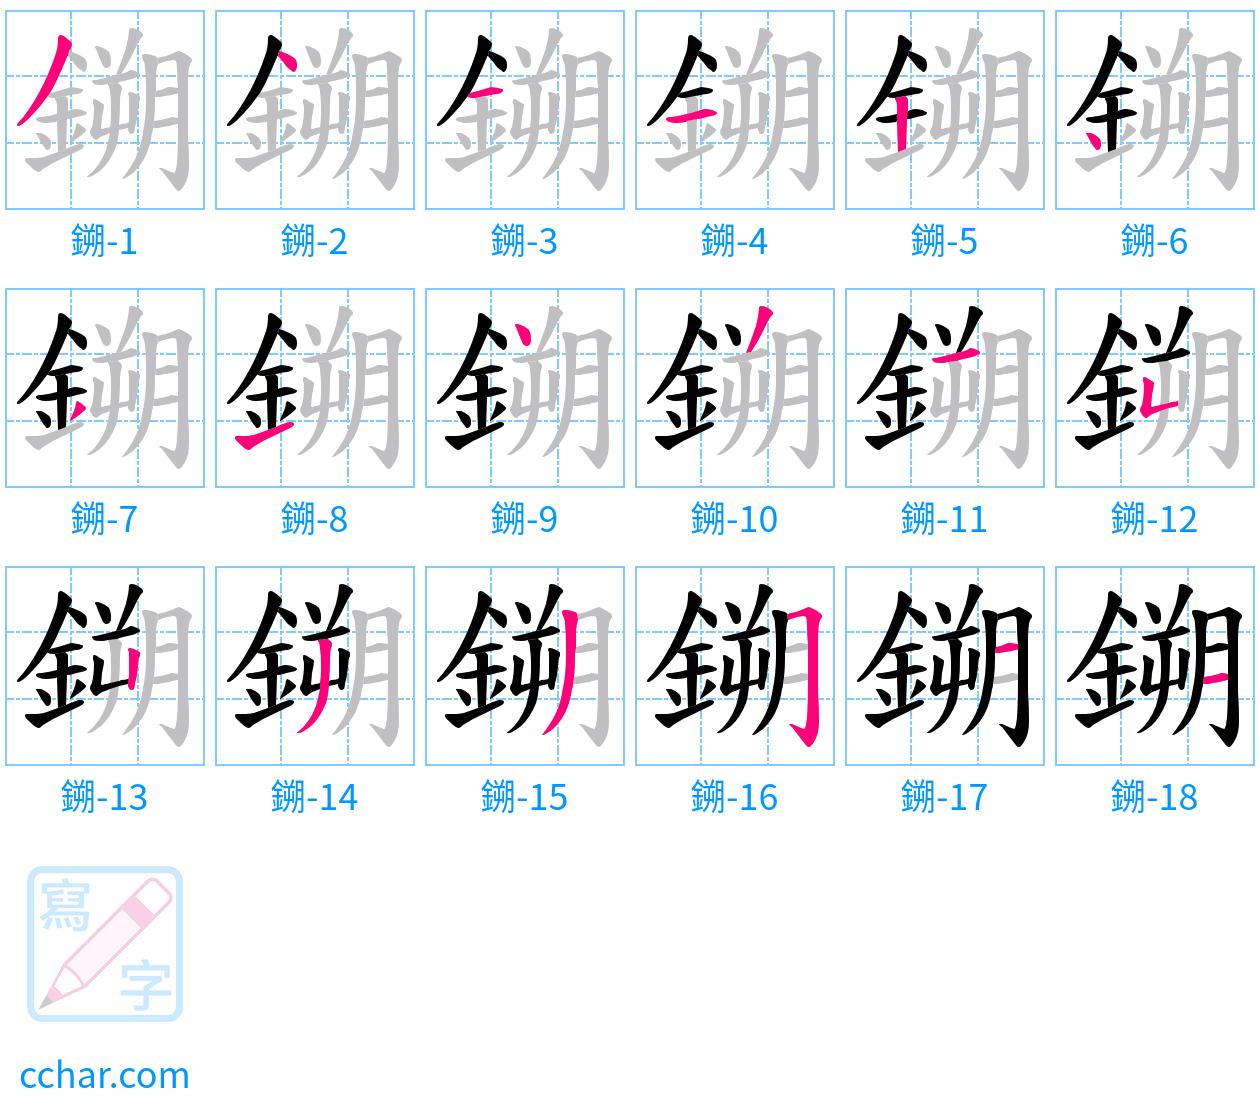 鎙 stroke order step-by-step diagram